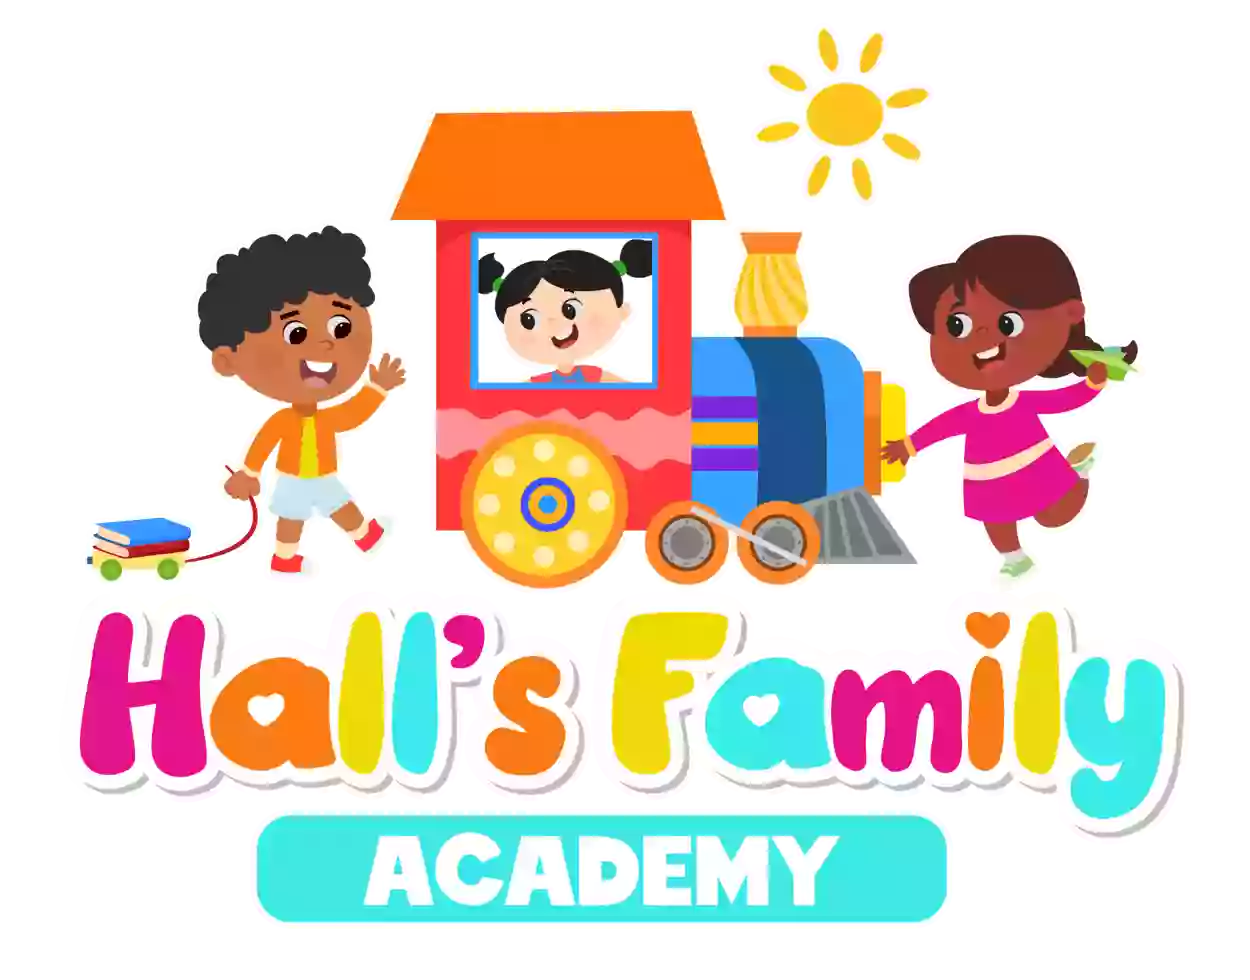 Hall's Family Academy